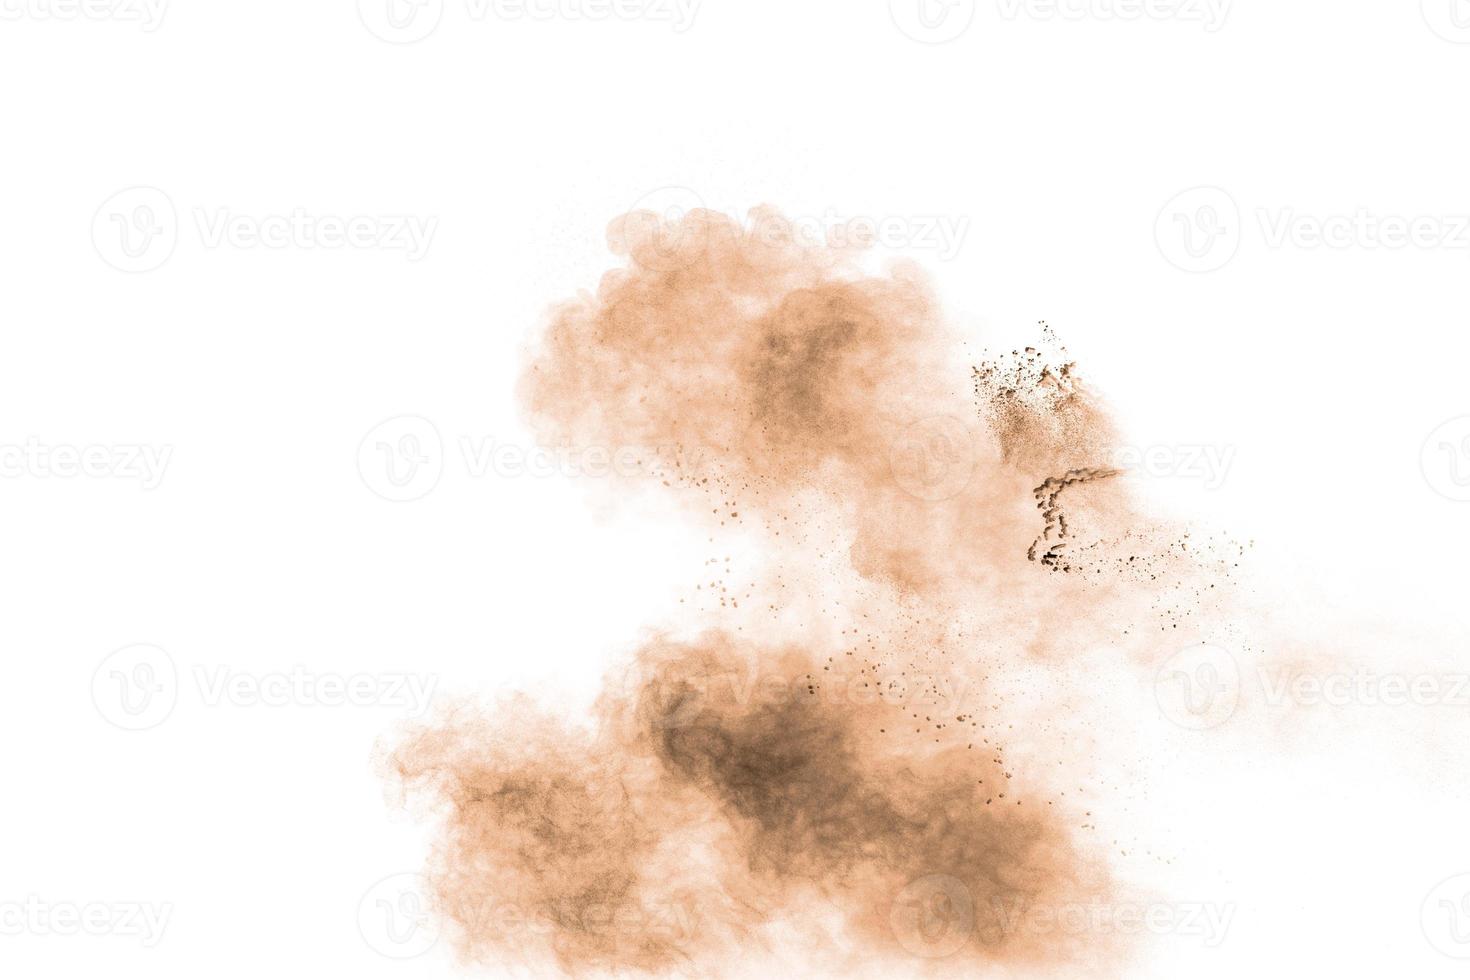 congele o movimento do pó marrom explodindo. desenho abstrato de nuvem de poeira marrom contra um fundo branco. foto